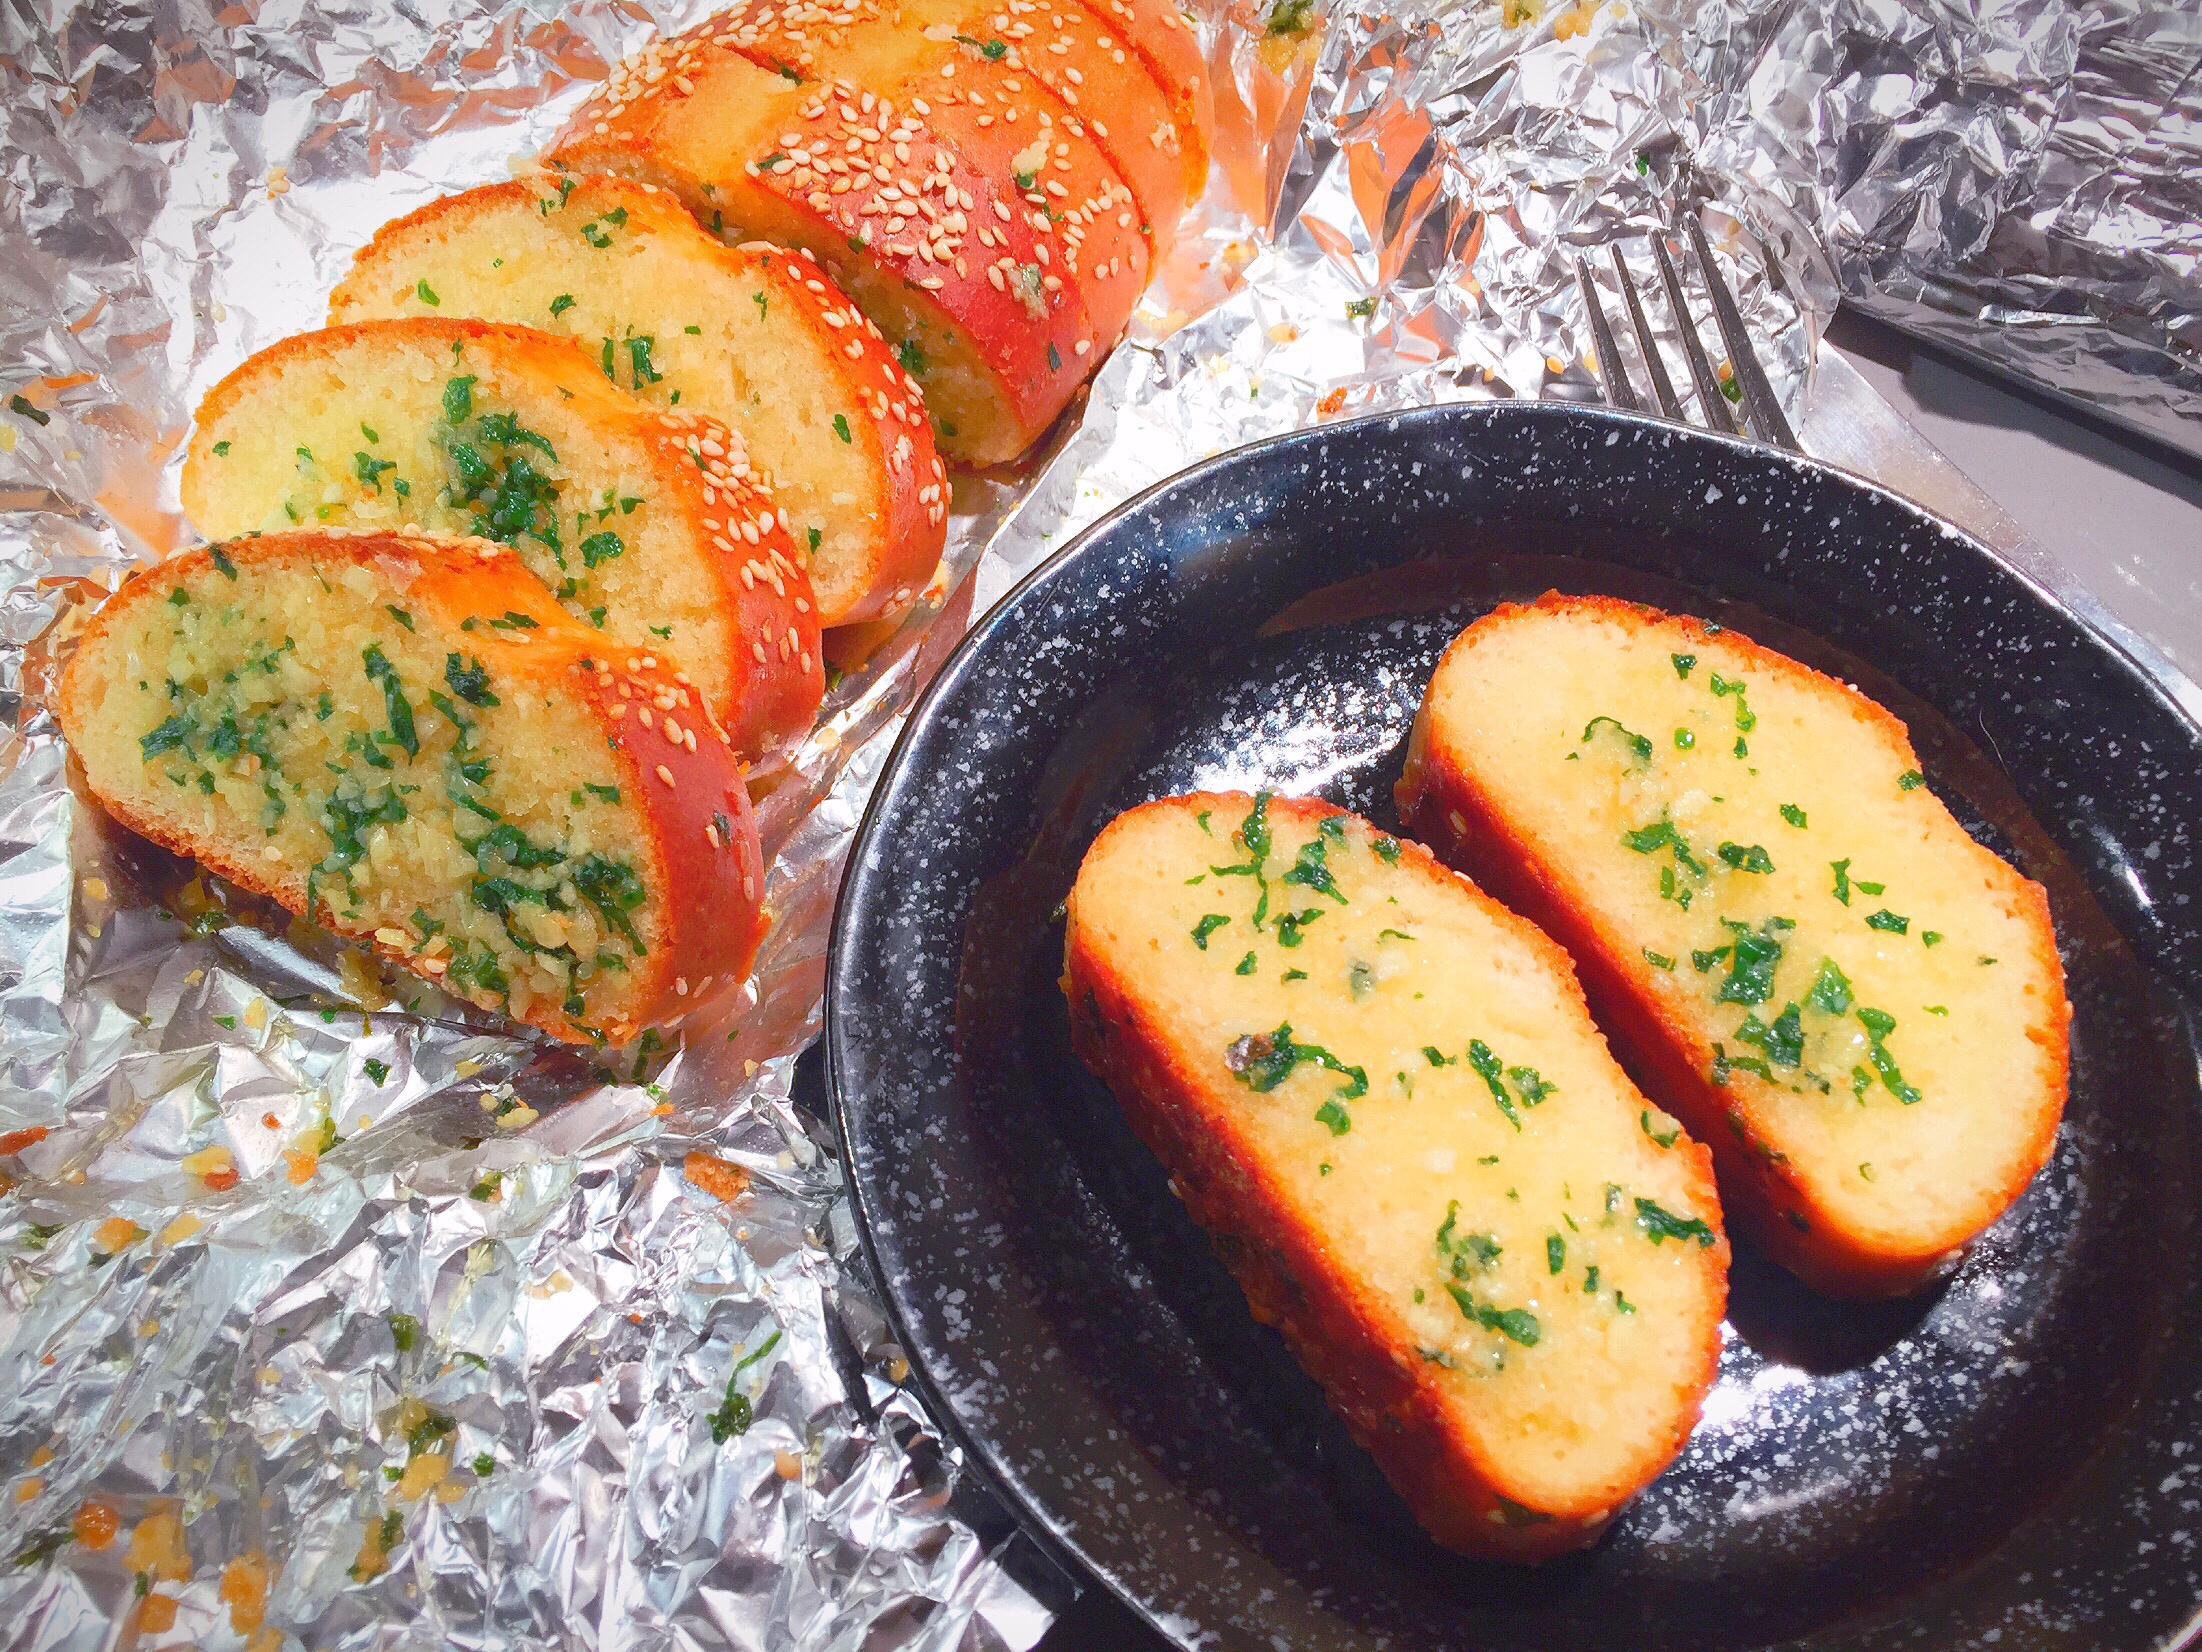 最好吃的蒜蓉面包|从面包做起|Homemade Garlic Bread from Scratch-The Best Garlic Bread You’ll Ever Eat的做法